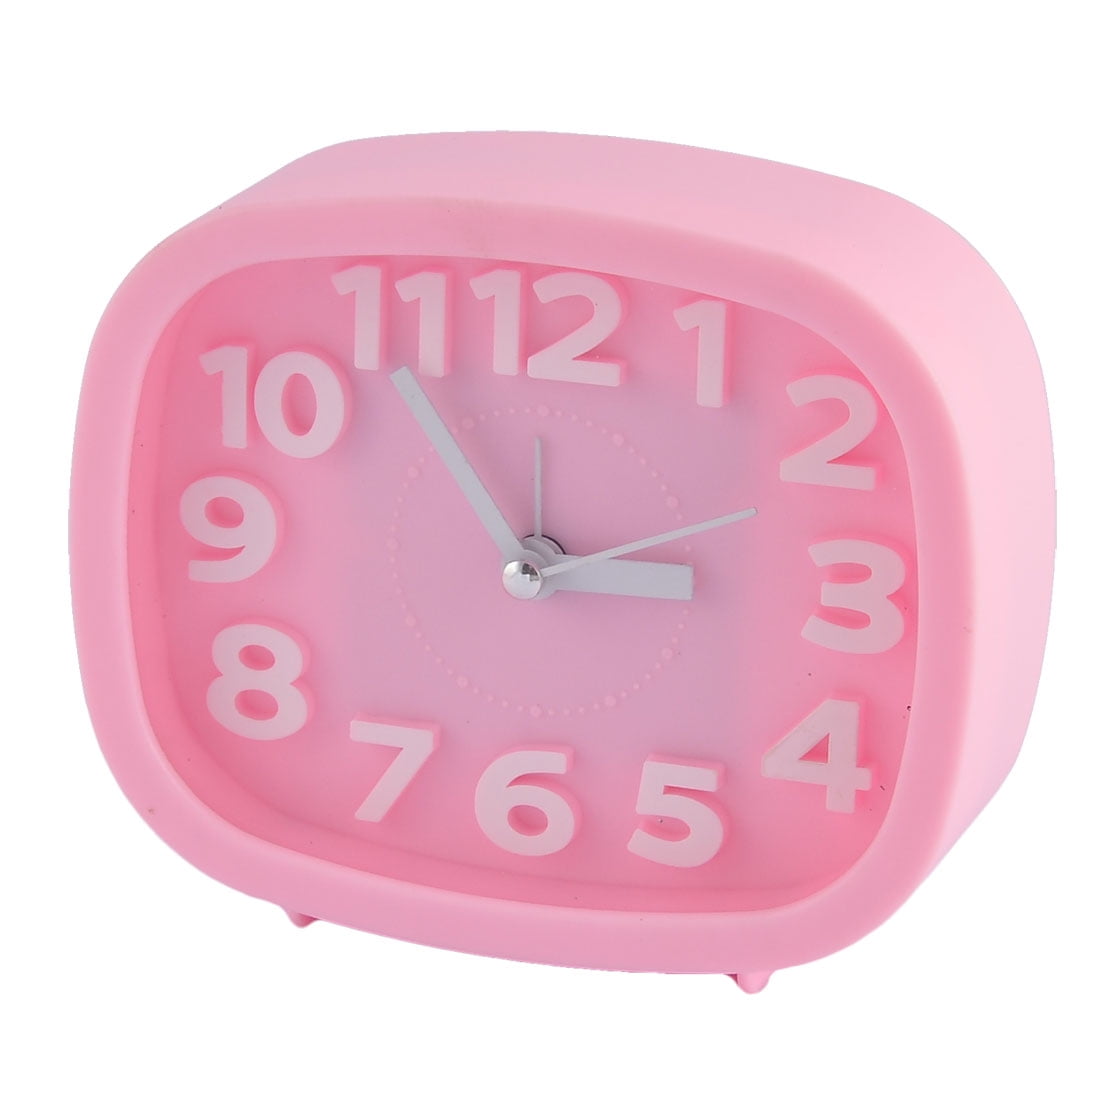 Pink Alarm Clock 5’’ X 2.5’’ X 1.5’’ 